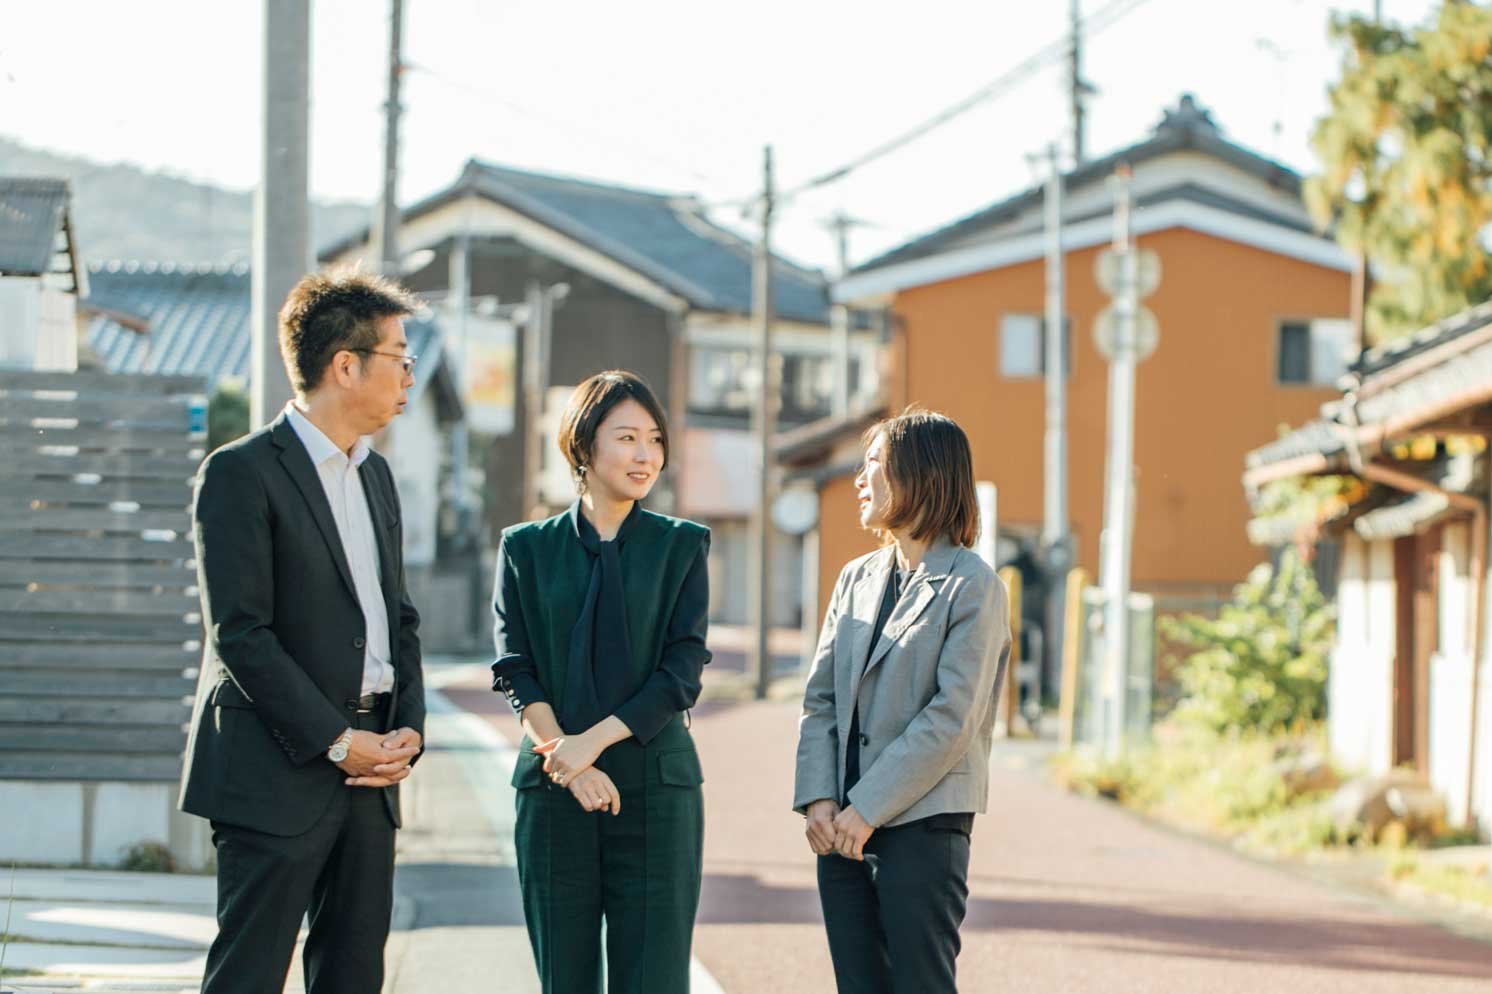 左から田村さん、武村さん、後藤さん  | Make New Magazine「未来の定番」をつくるために、パナソニックのリアルな姿を伝えるメディア